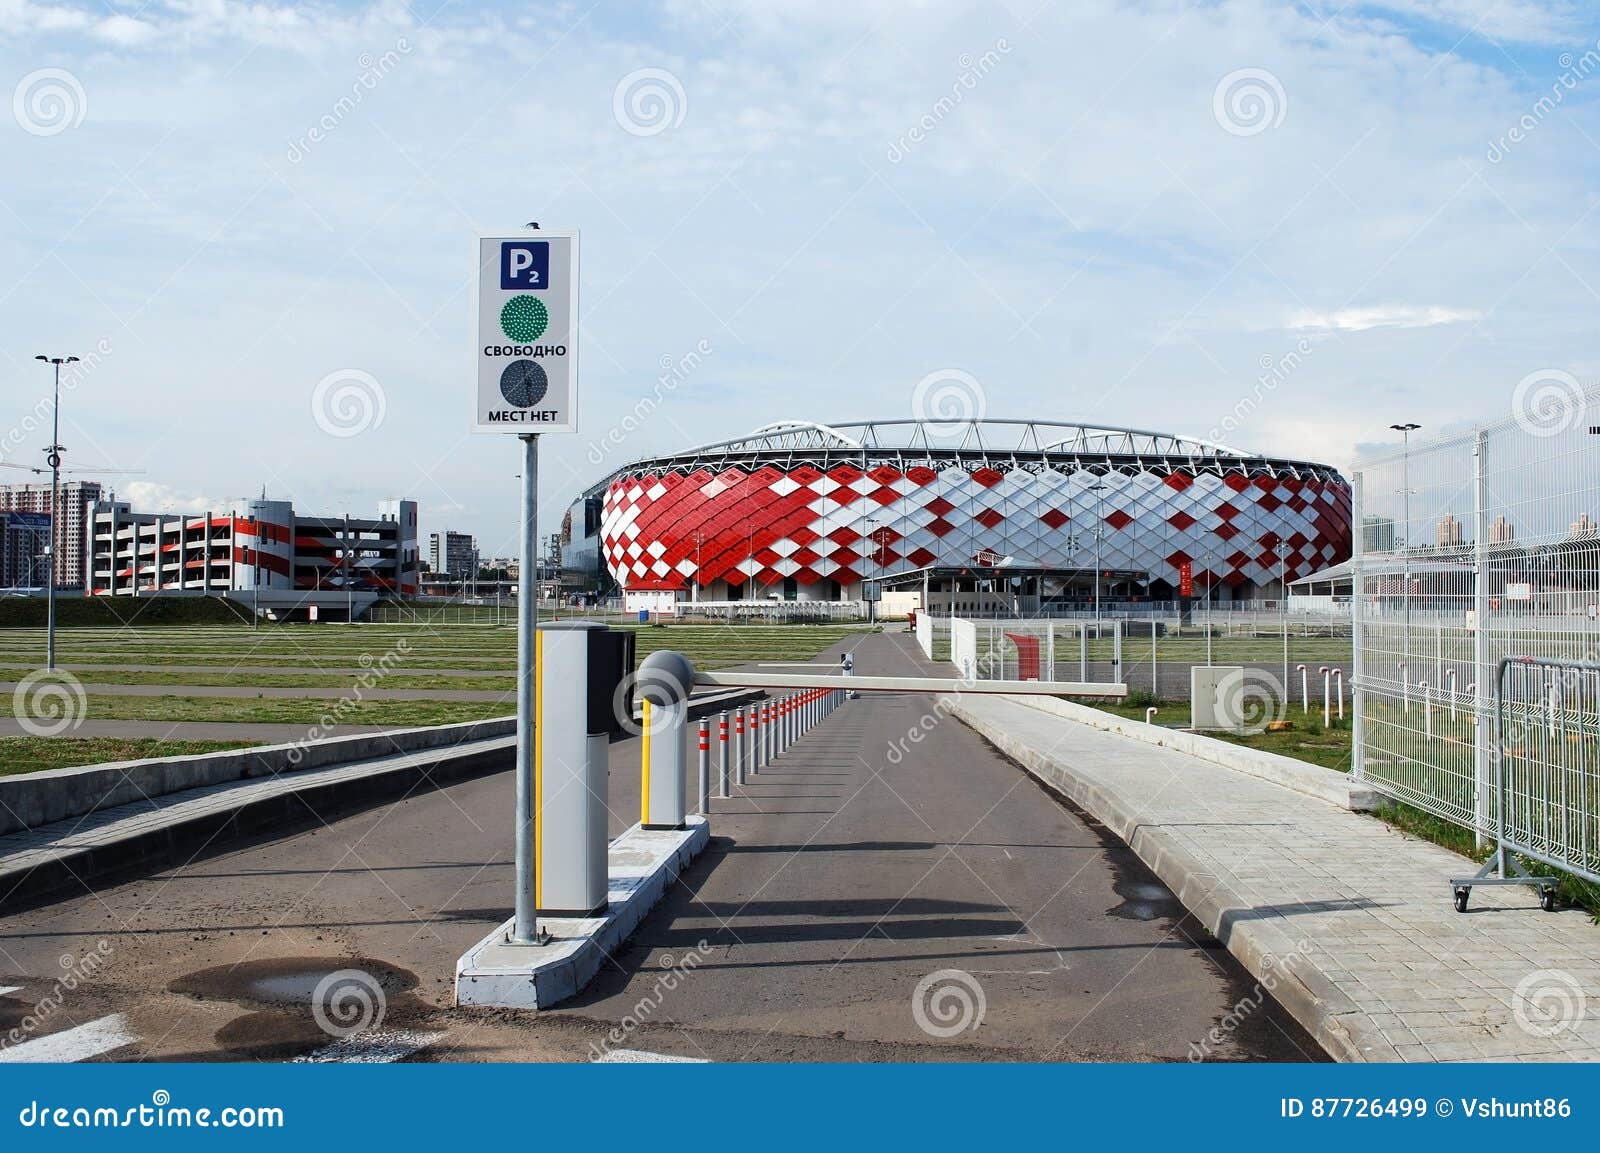 Stadium Spartak / Otkrytiye arena in Moscow